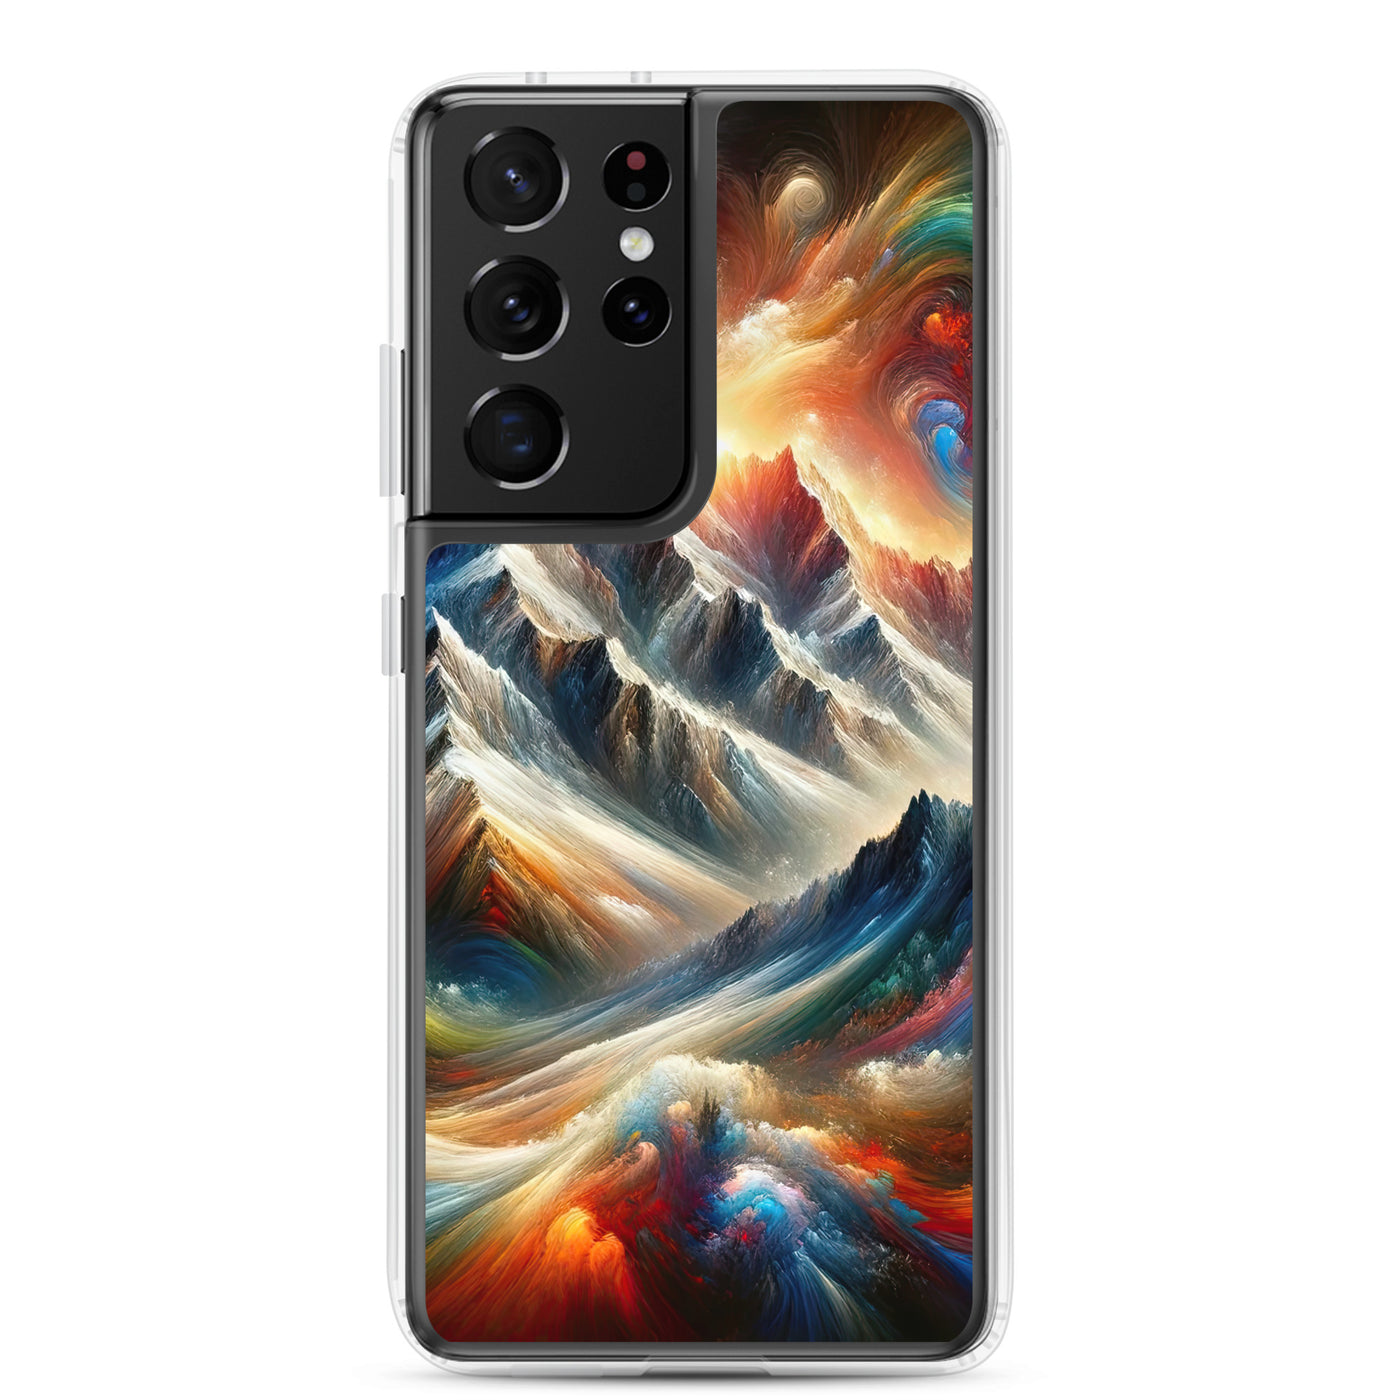 Expressionistische Alpen, Berge: Gemälde mit Farbexplosion - Samsung Schutzhülle (durchsichtig) berge xxx yyy zzz Samsung Galaxy S21 Ultra